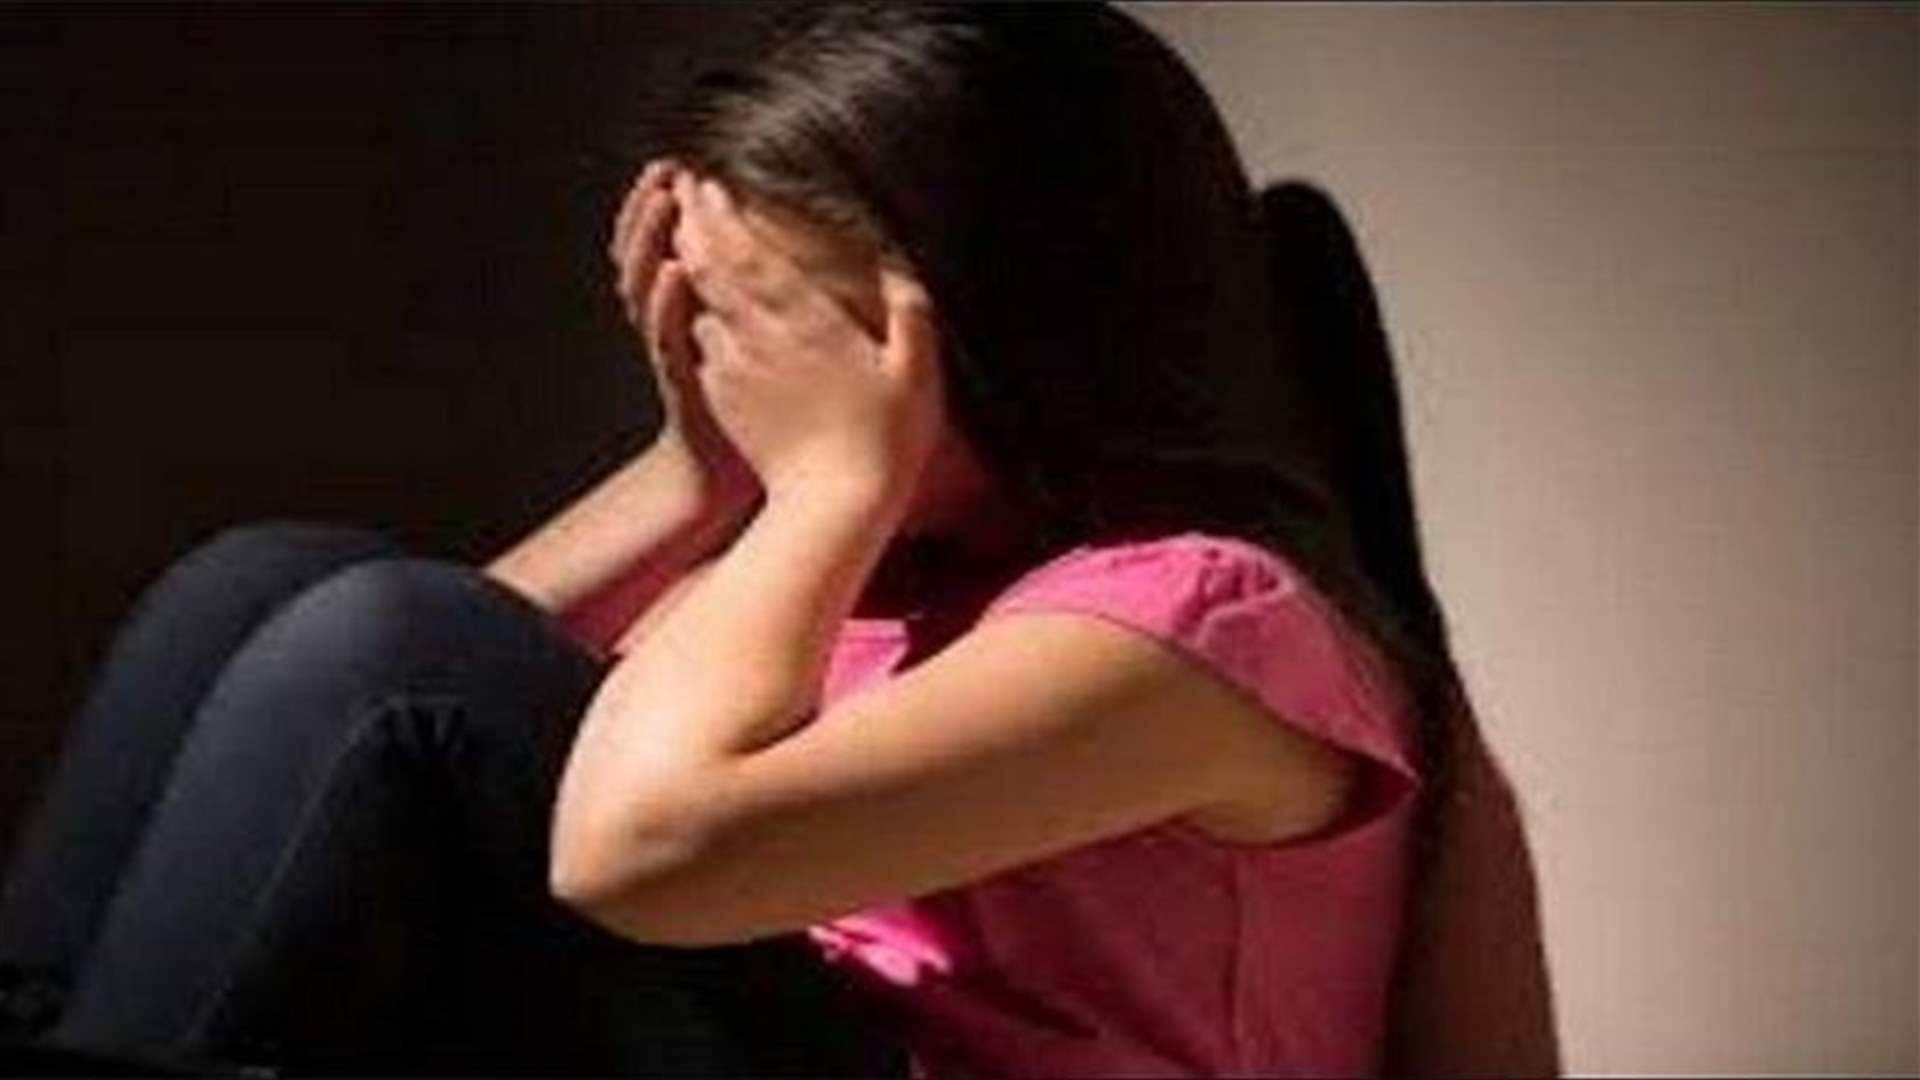 شقيقتان تدعيان على والدهما بجرم اغتصاب...والوالد يعترف